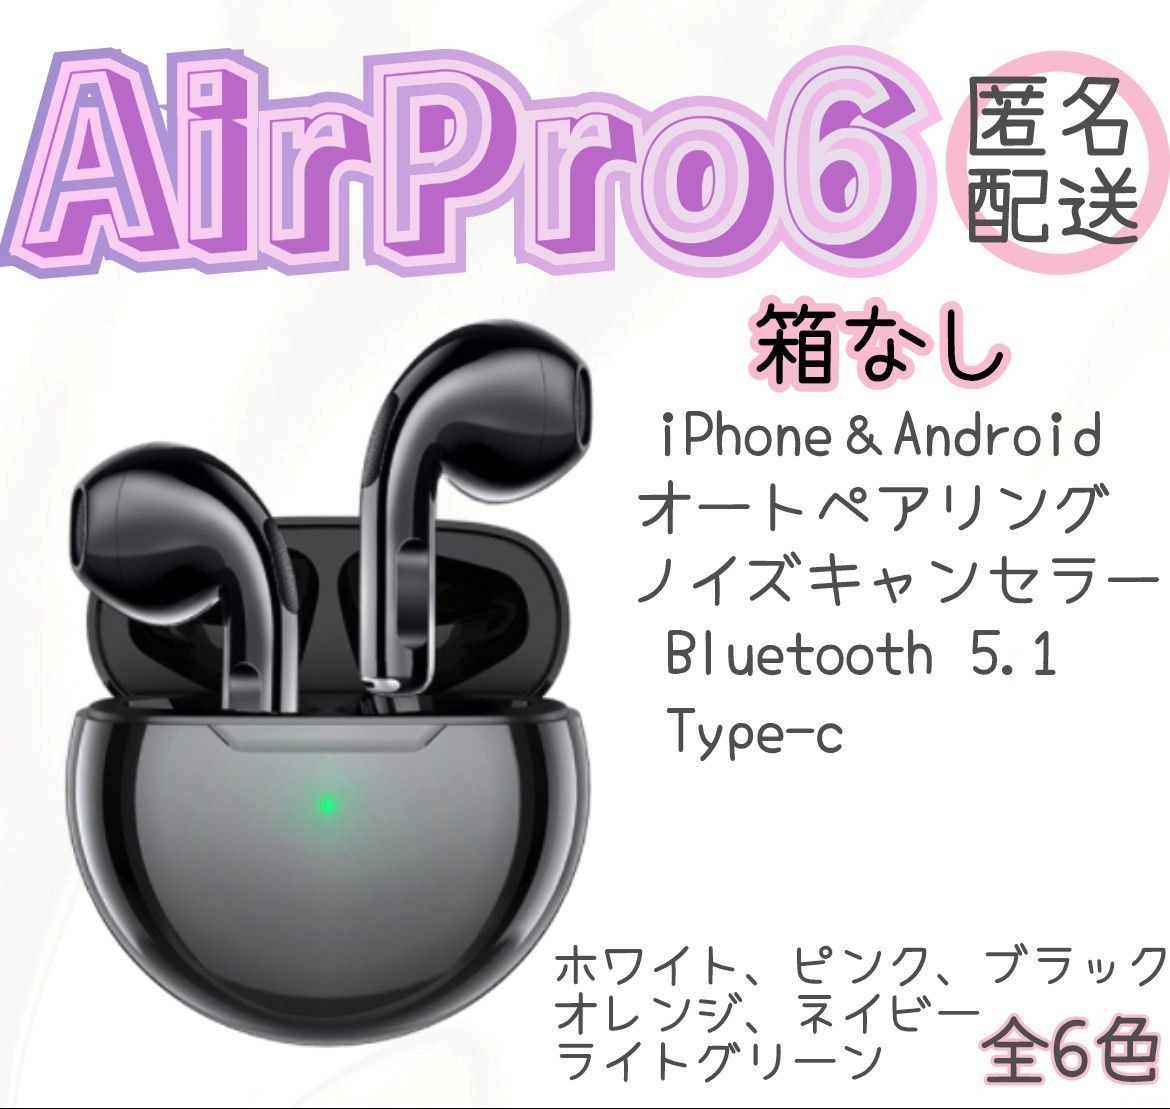 数量限定・AirPro6・オレンジ】Bluetoothワイヤレスイヤホン 夢shop メルカリ